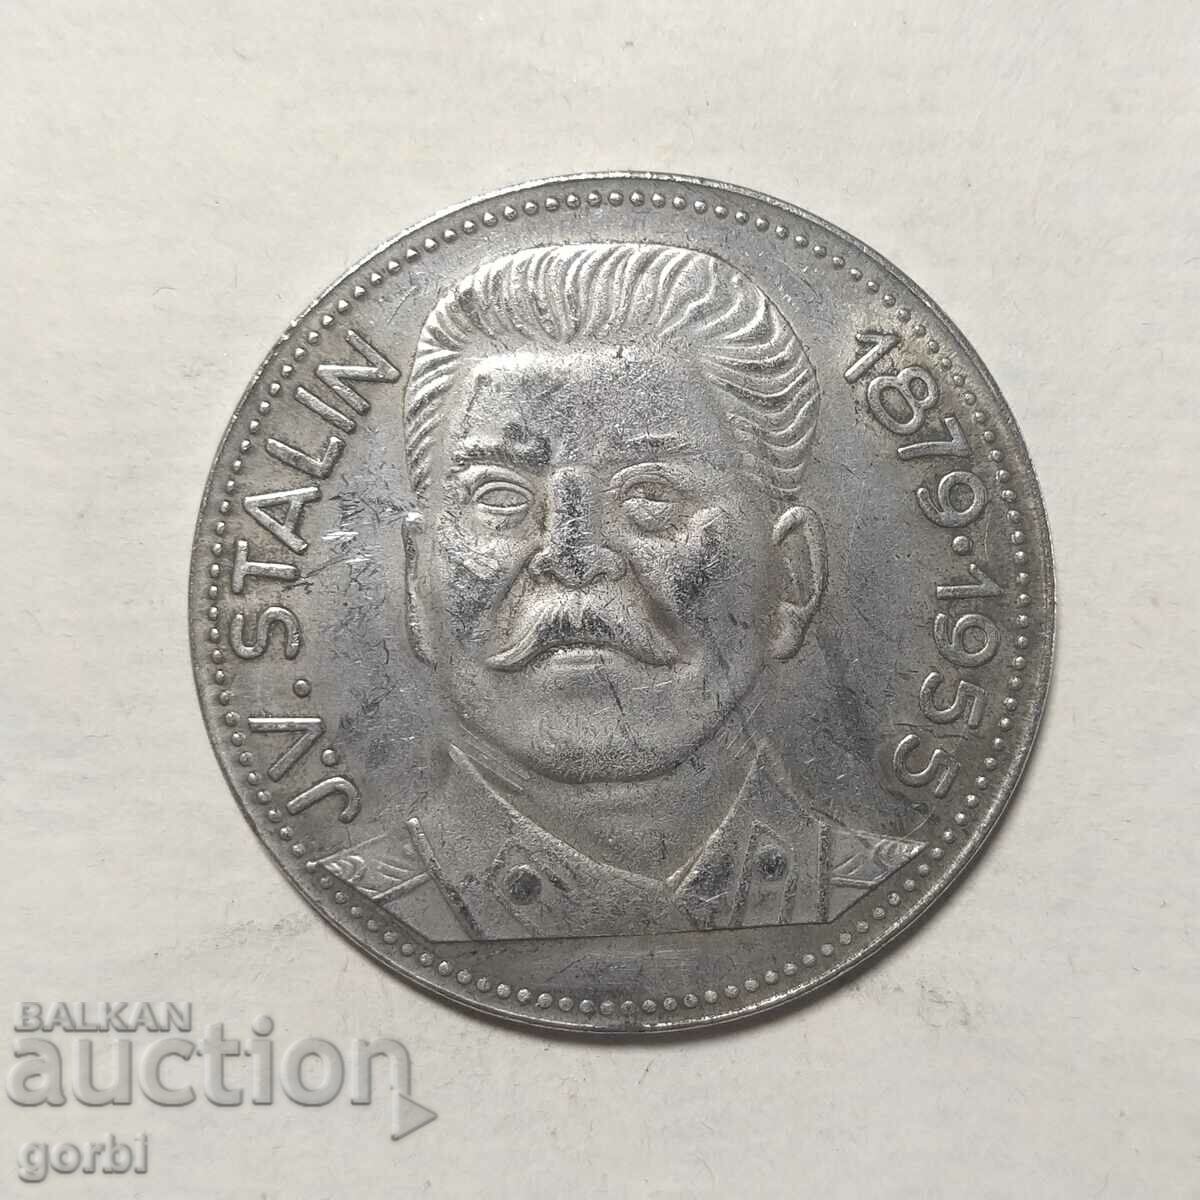 Replica - plaque, medal, Stalin coin